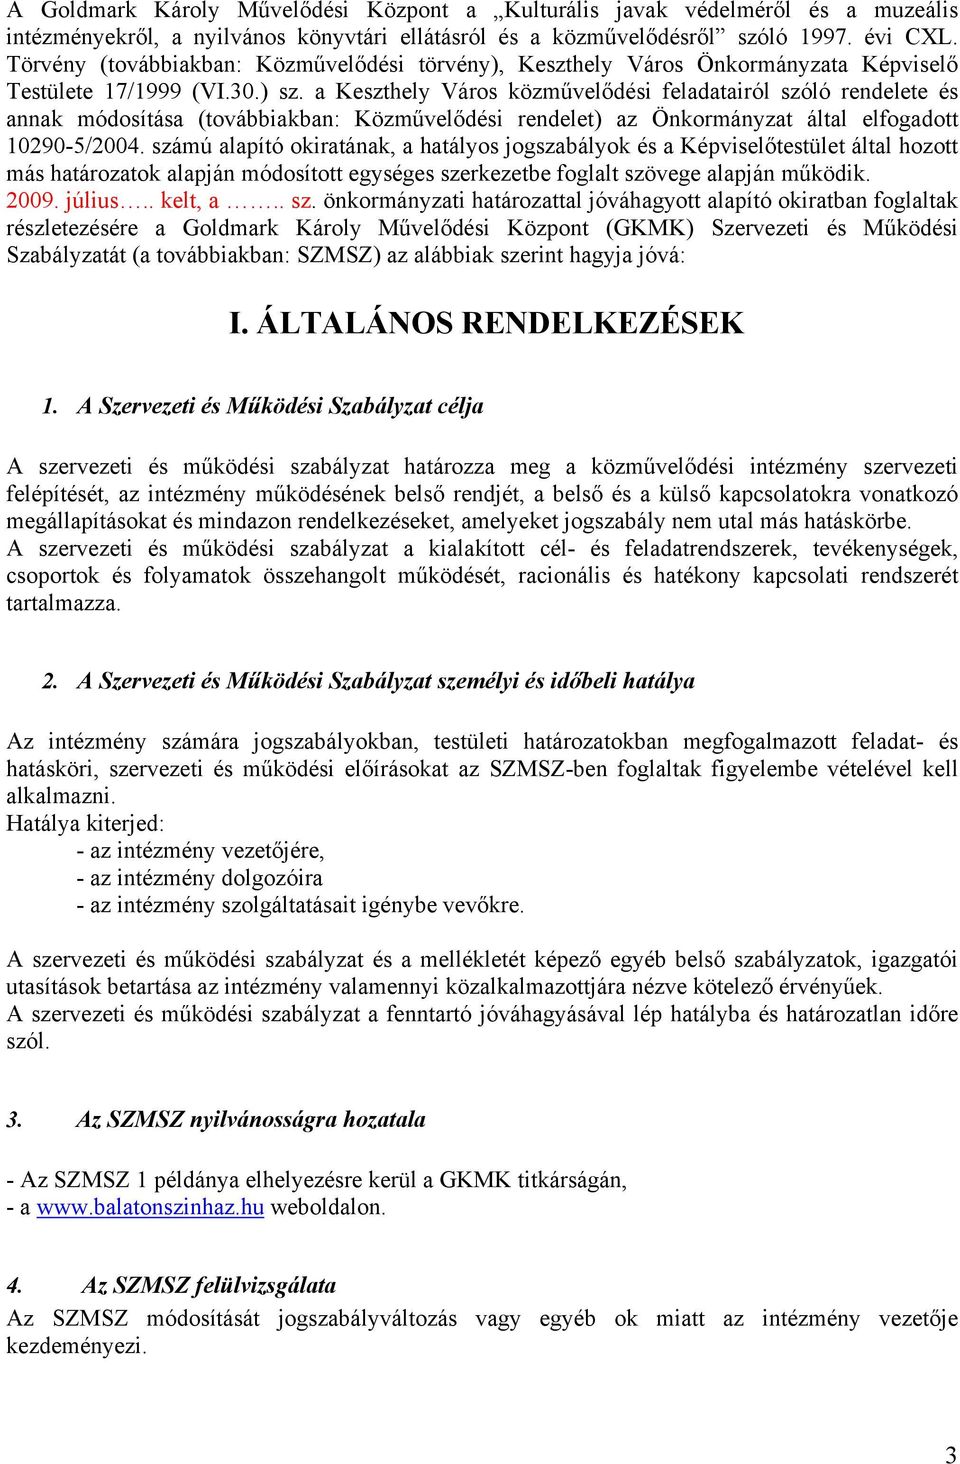 a Keszthely Város közművelődési feladatairól szóló rendelete és annak módosítása (továbbiakban: Közművelődési rendelet) az Önkormányzat által elfogadott 10290-5/2004.